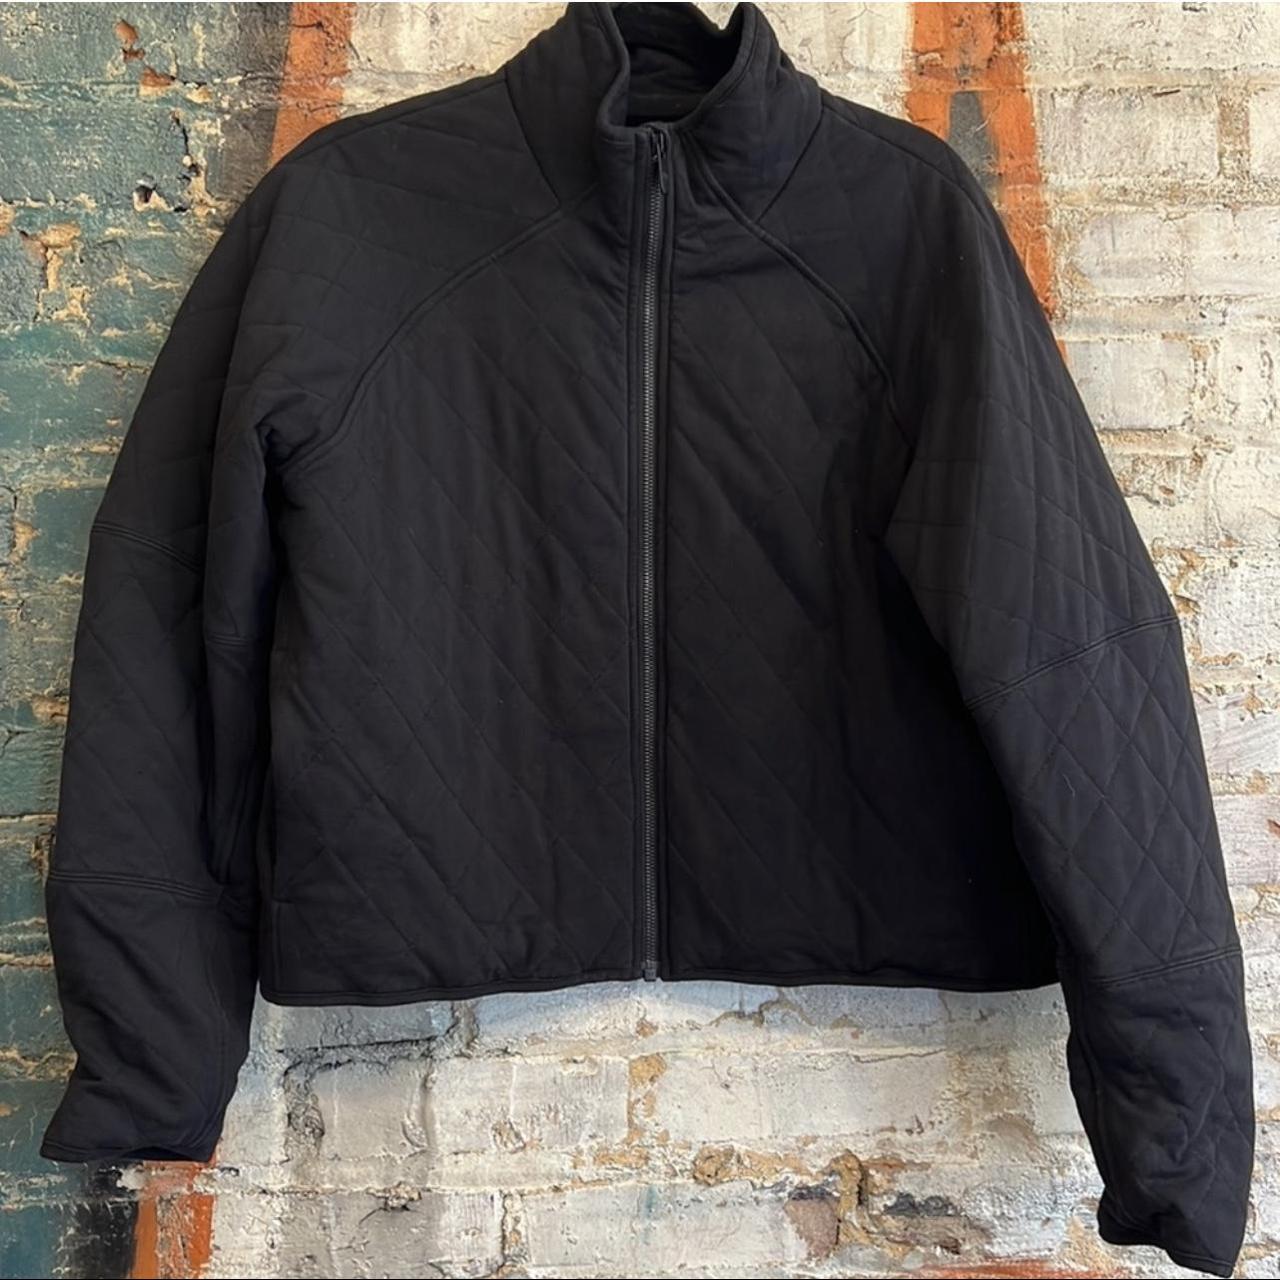 Lululemon quilted jacket size 10. Quilted black - Depop